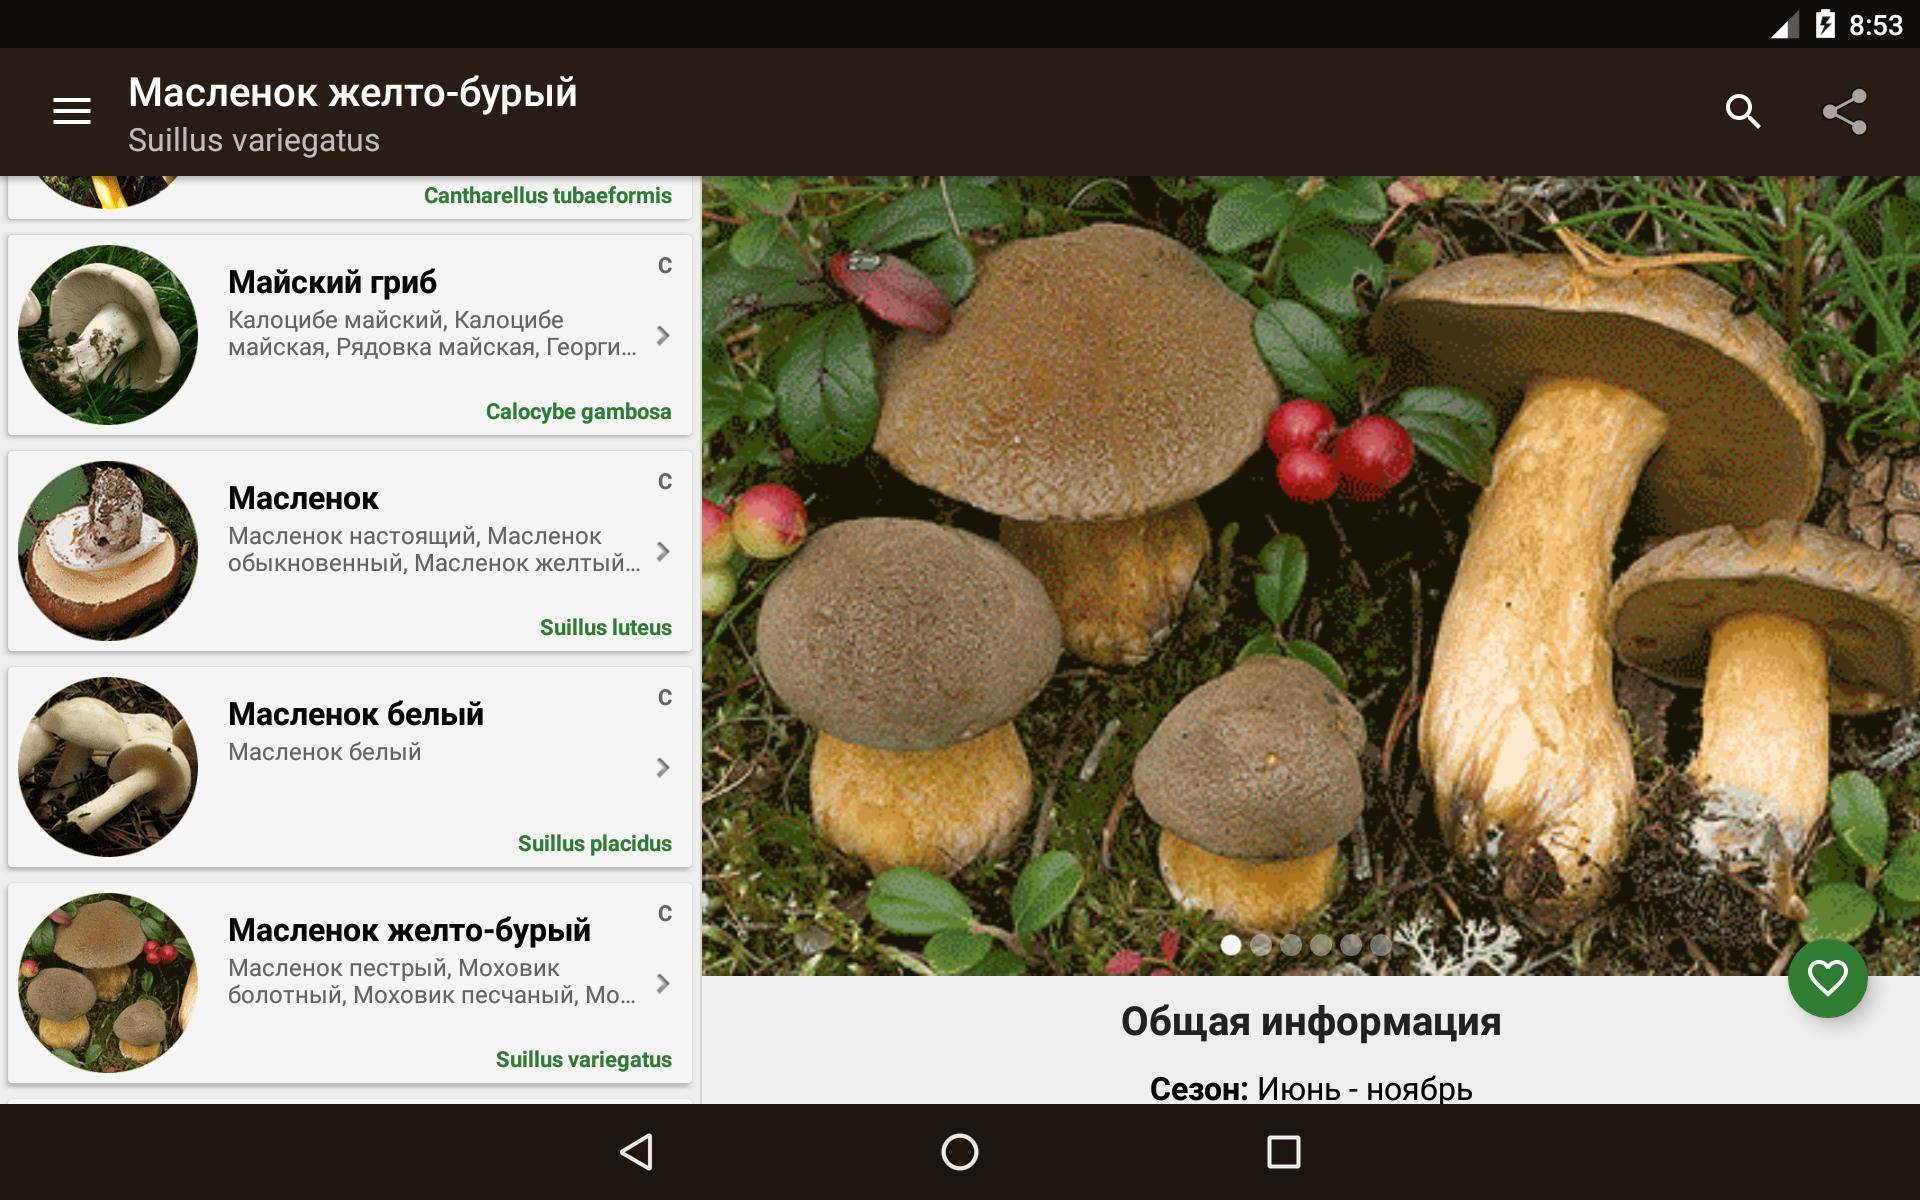 Съедобные грибы фото и название и описание